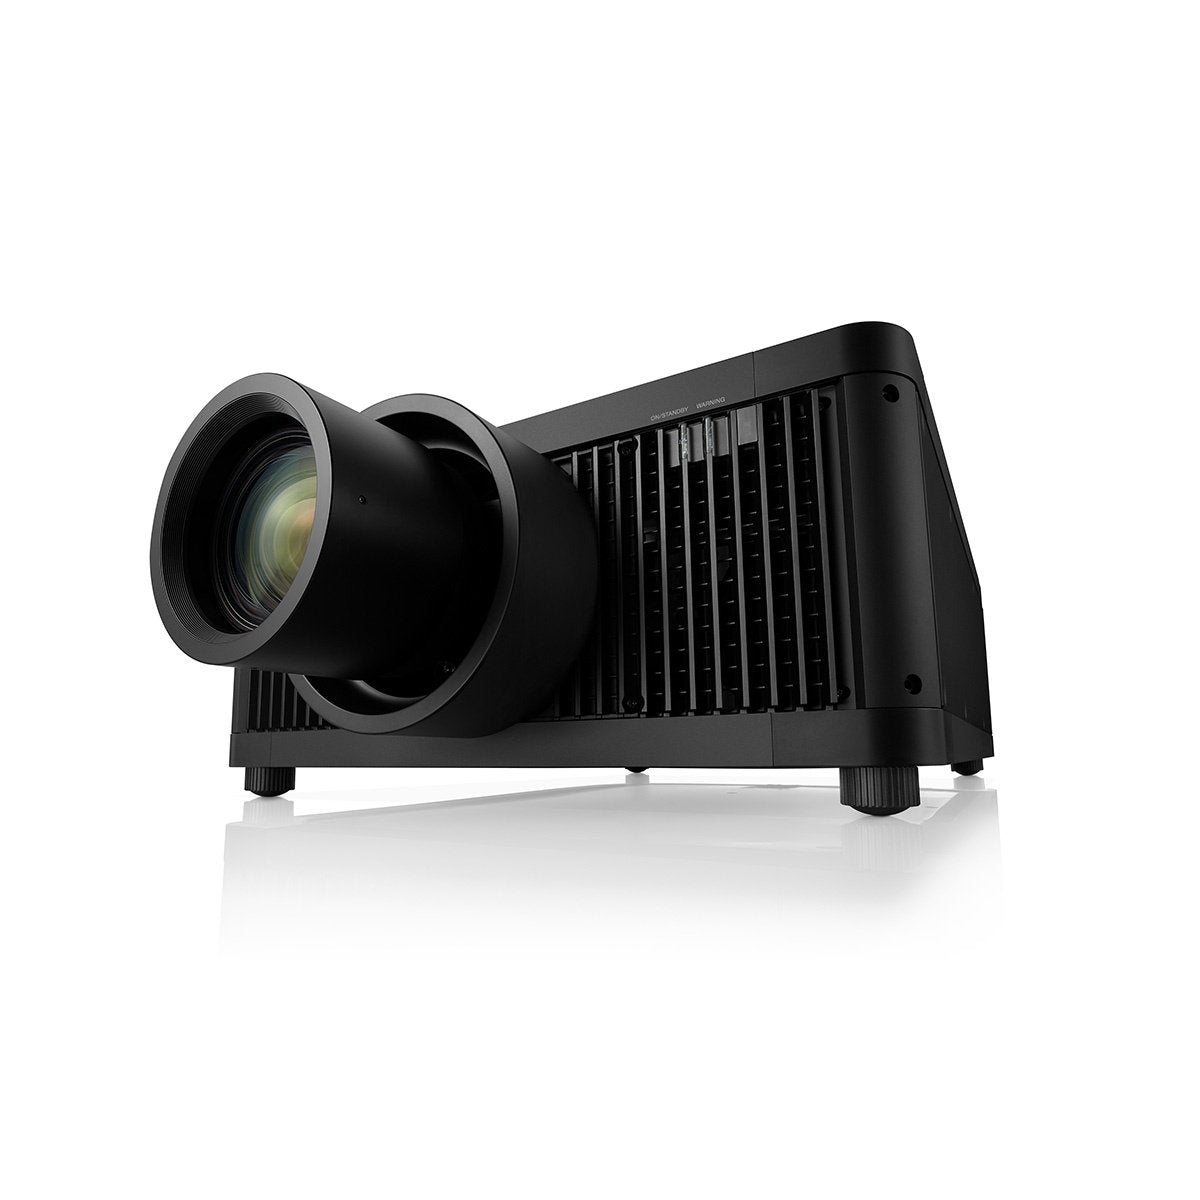 Sony Pro - VPL-GTZ380 4K SXRD Laser Projector